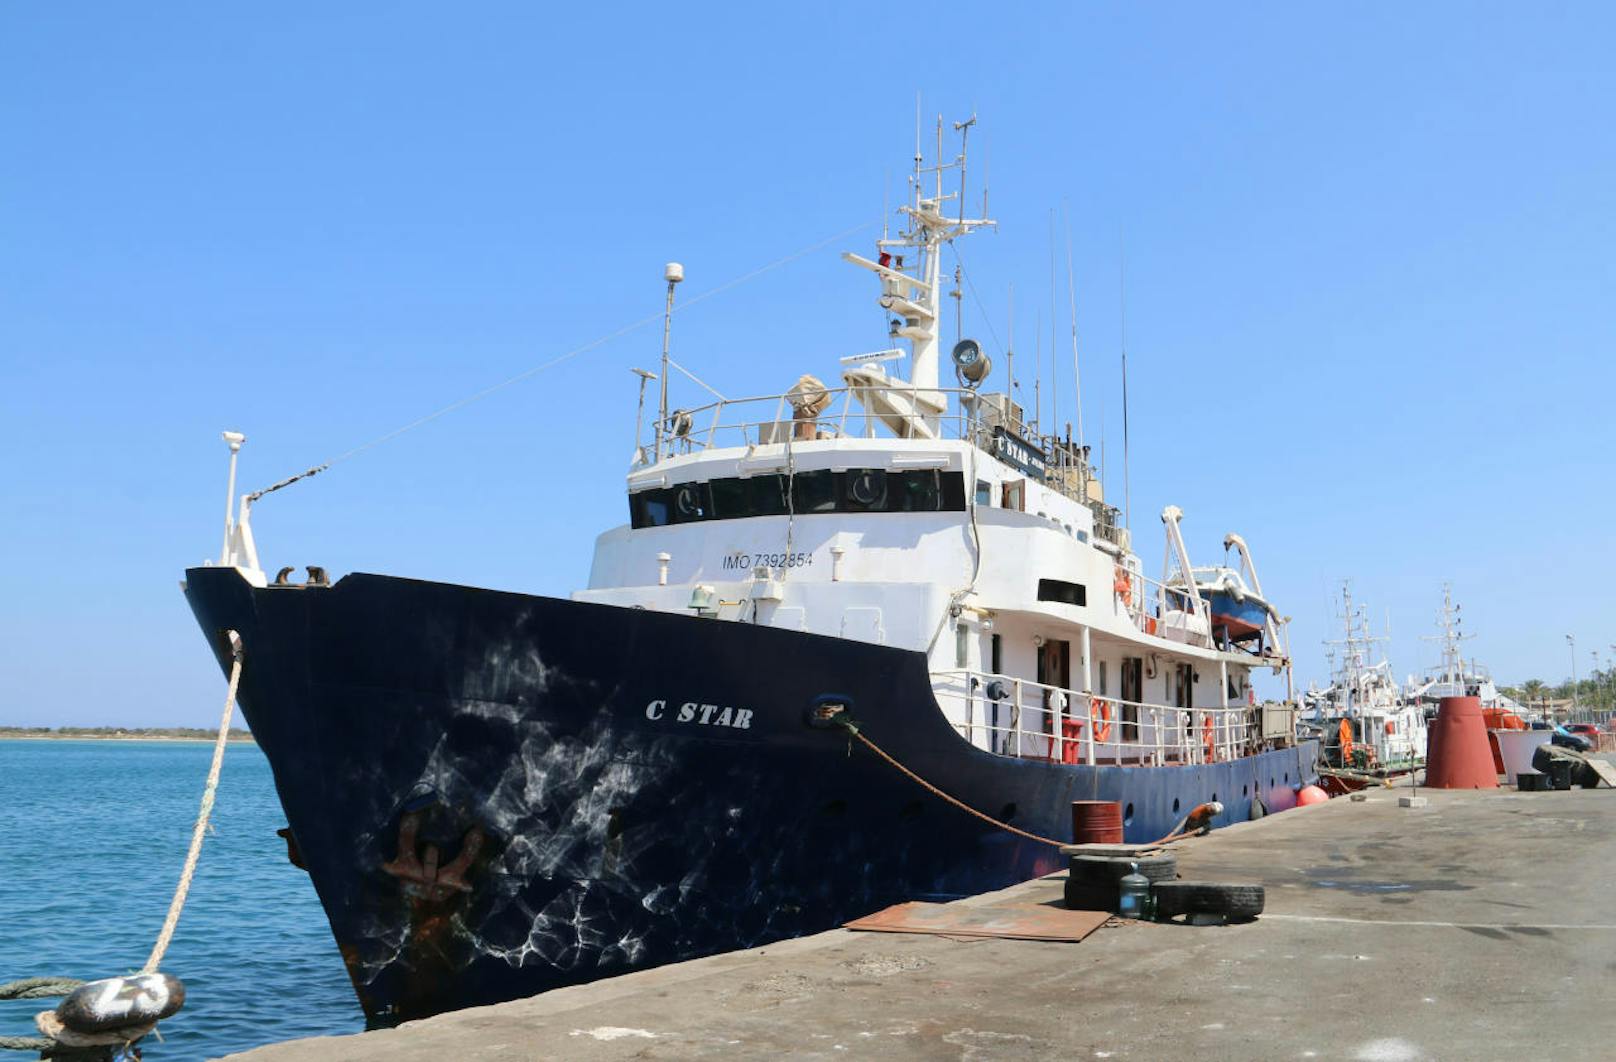 Die Rechtsextremen wollten mit dem gecharterten Schiff "C-Star" Seenotretter im Mittelmeer blockieren. Bereits der Beginn der "Mission" war ein Fiasko: Der Kapitän wurde festgenommen wegen Menschenschmuggels und Dokumentfälschung.